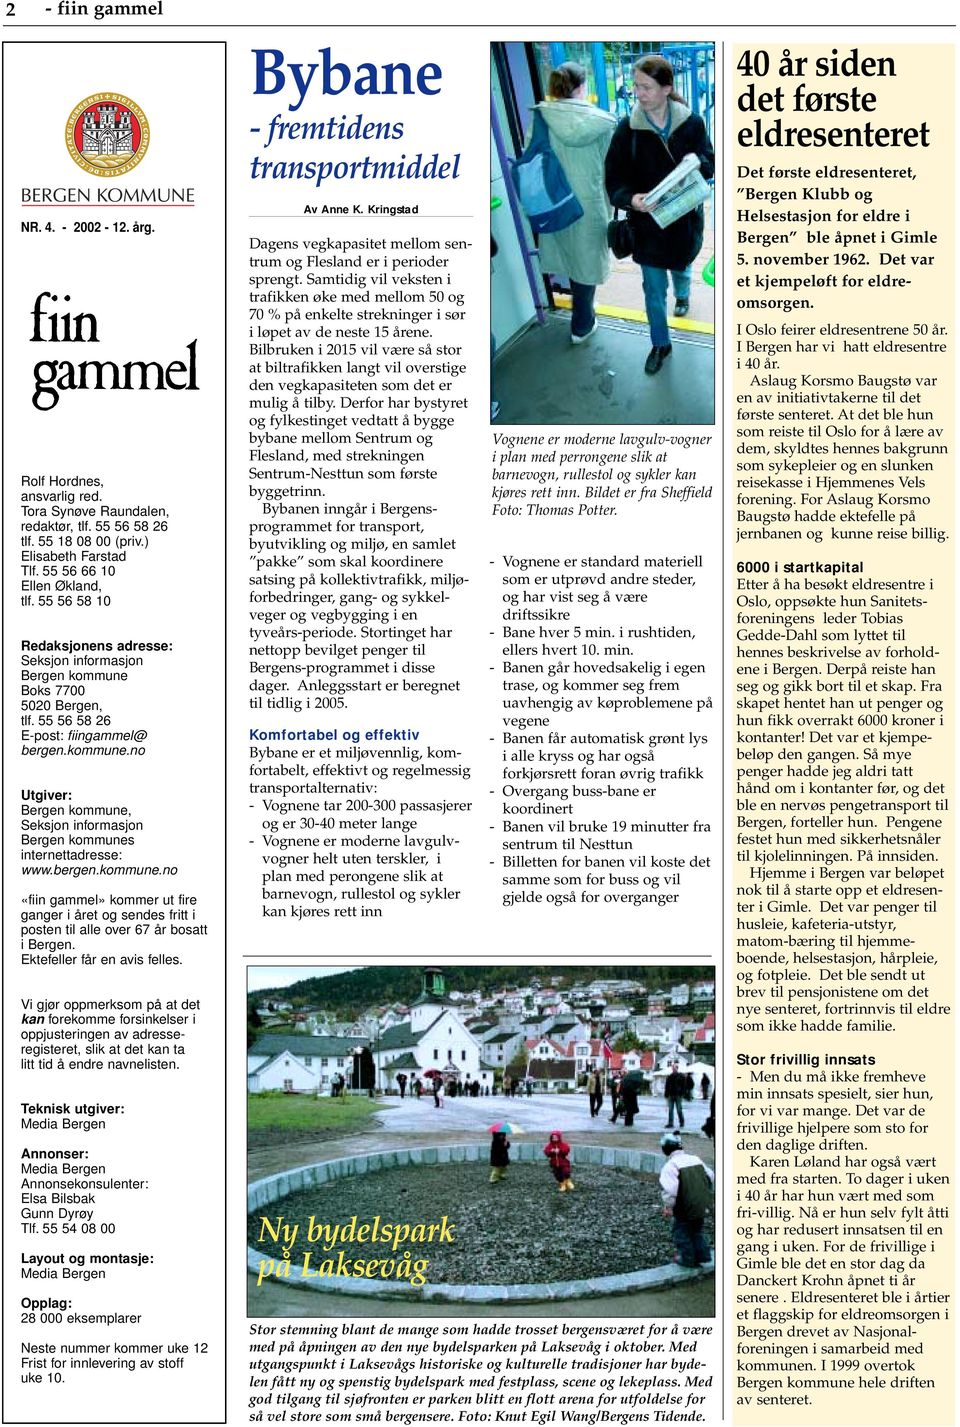 bergen.kommune.no «fiin gammel» kommer ut fire ganger i året og sendes fritt i posten til alle over 67 år bosatt i Bergen. Ektefeller får en avis felles.